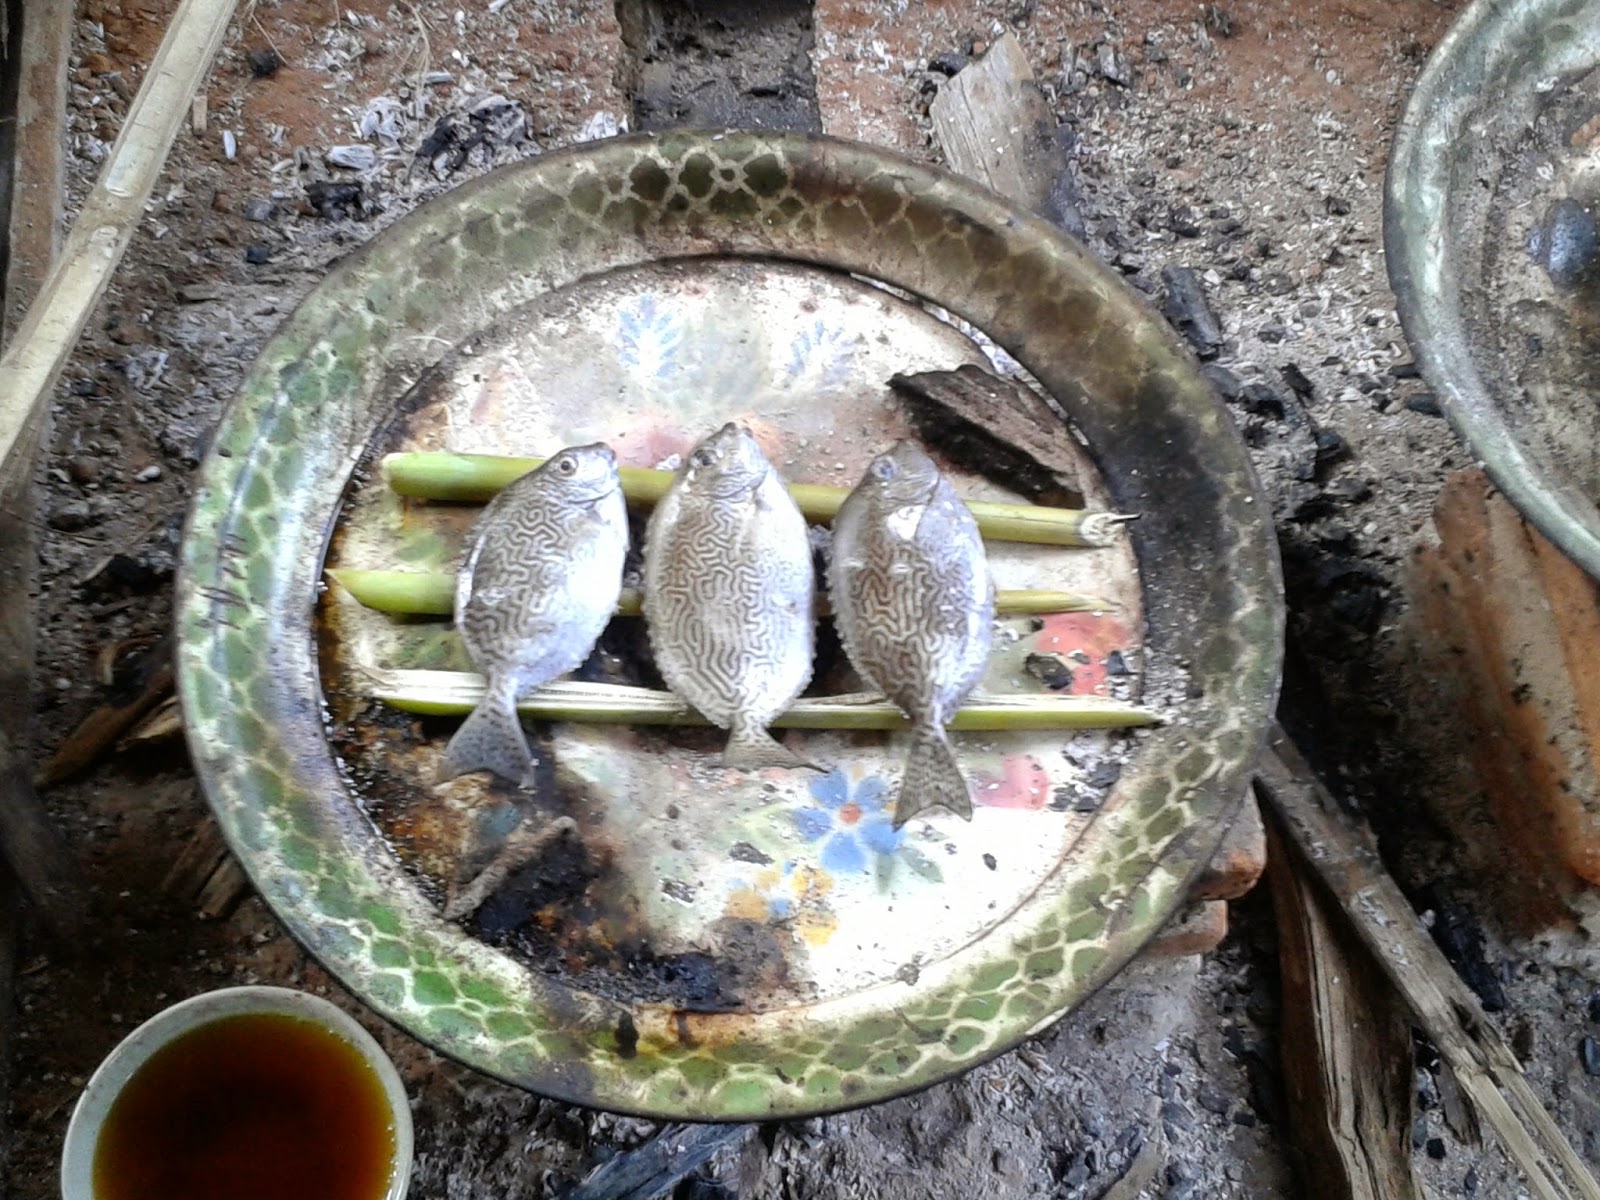 Proses pembakaran Ikan Semadar/Baronang